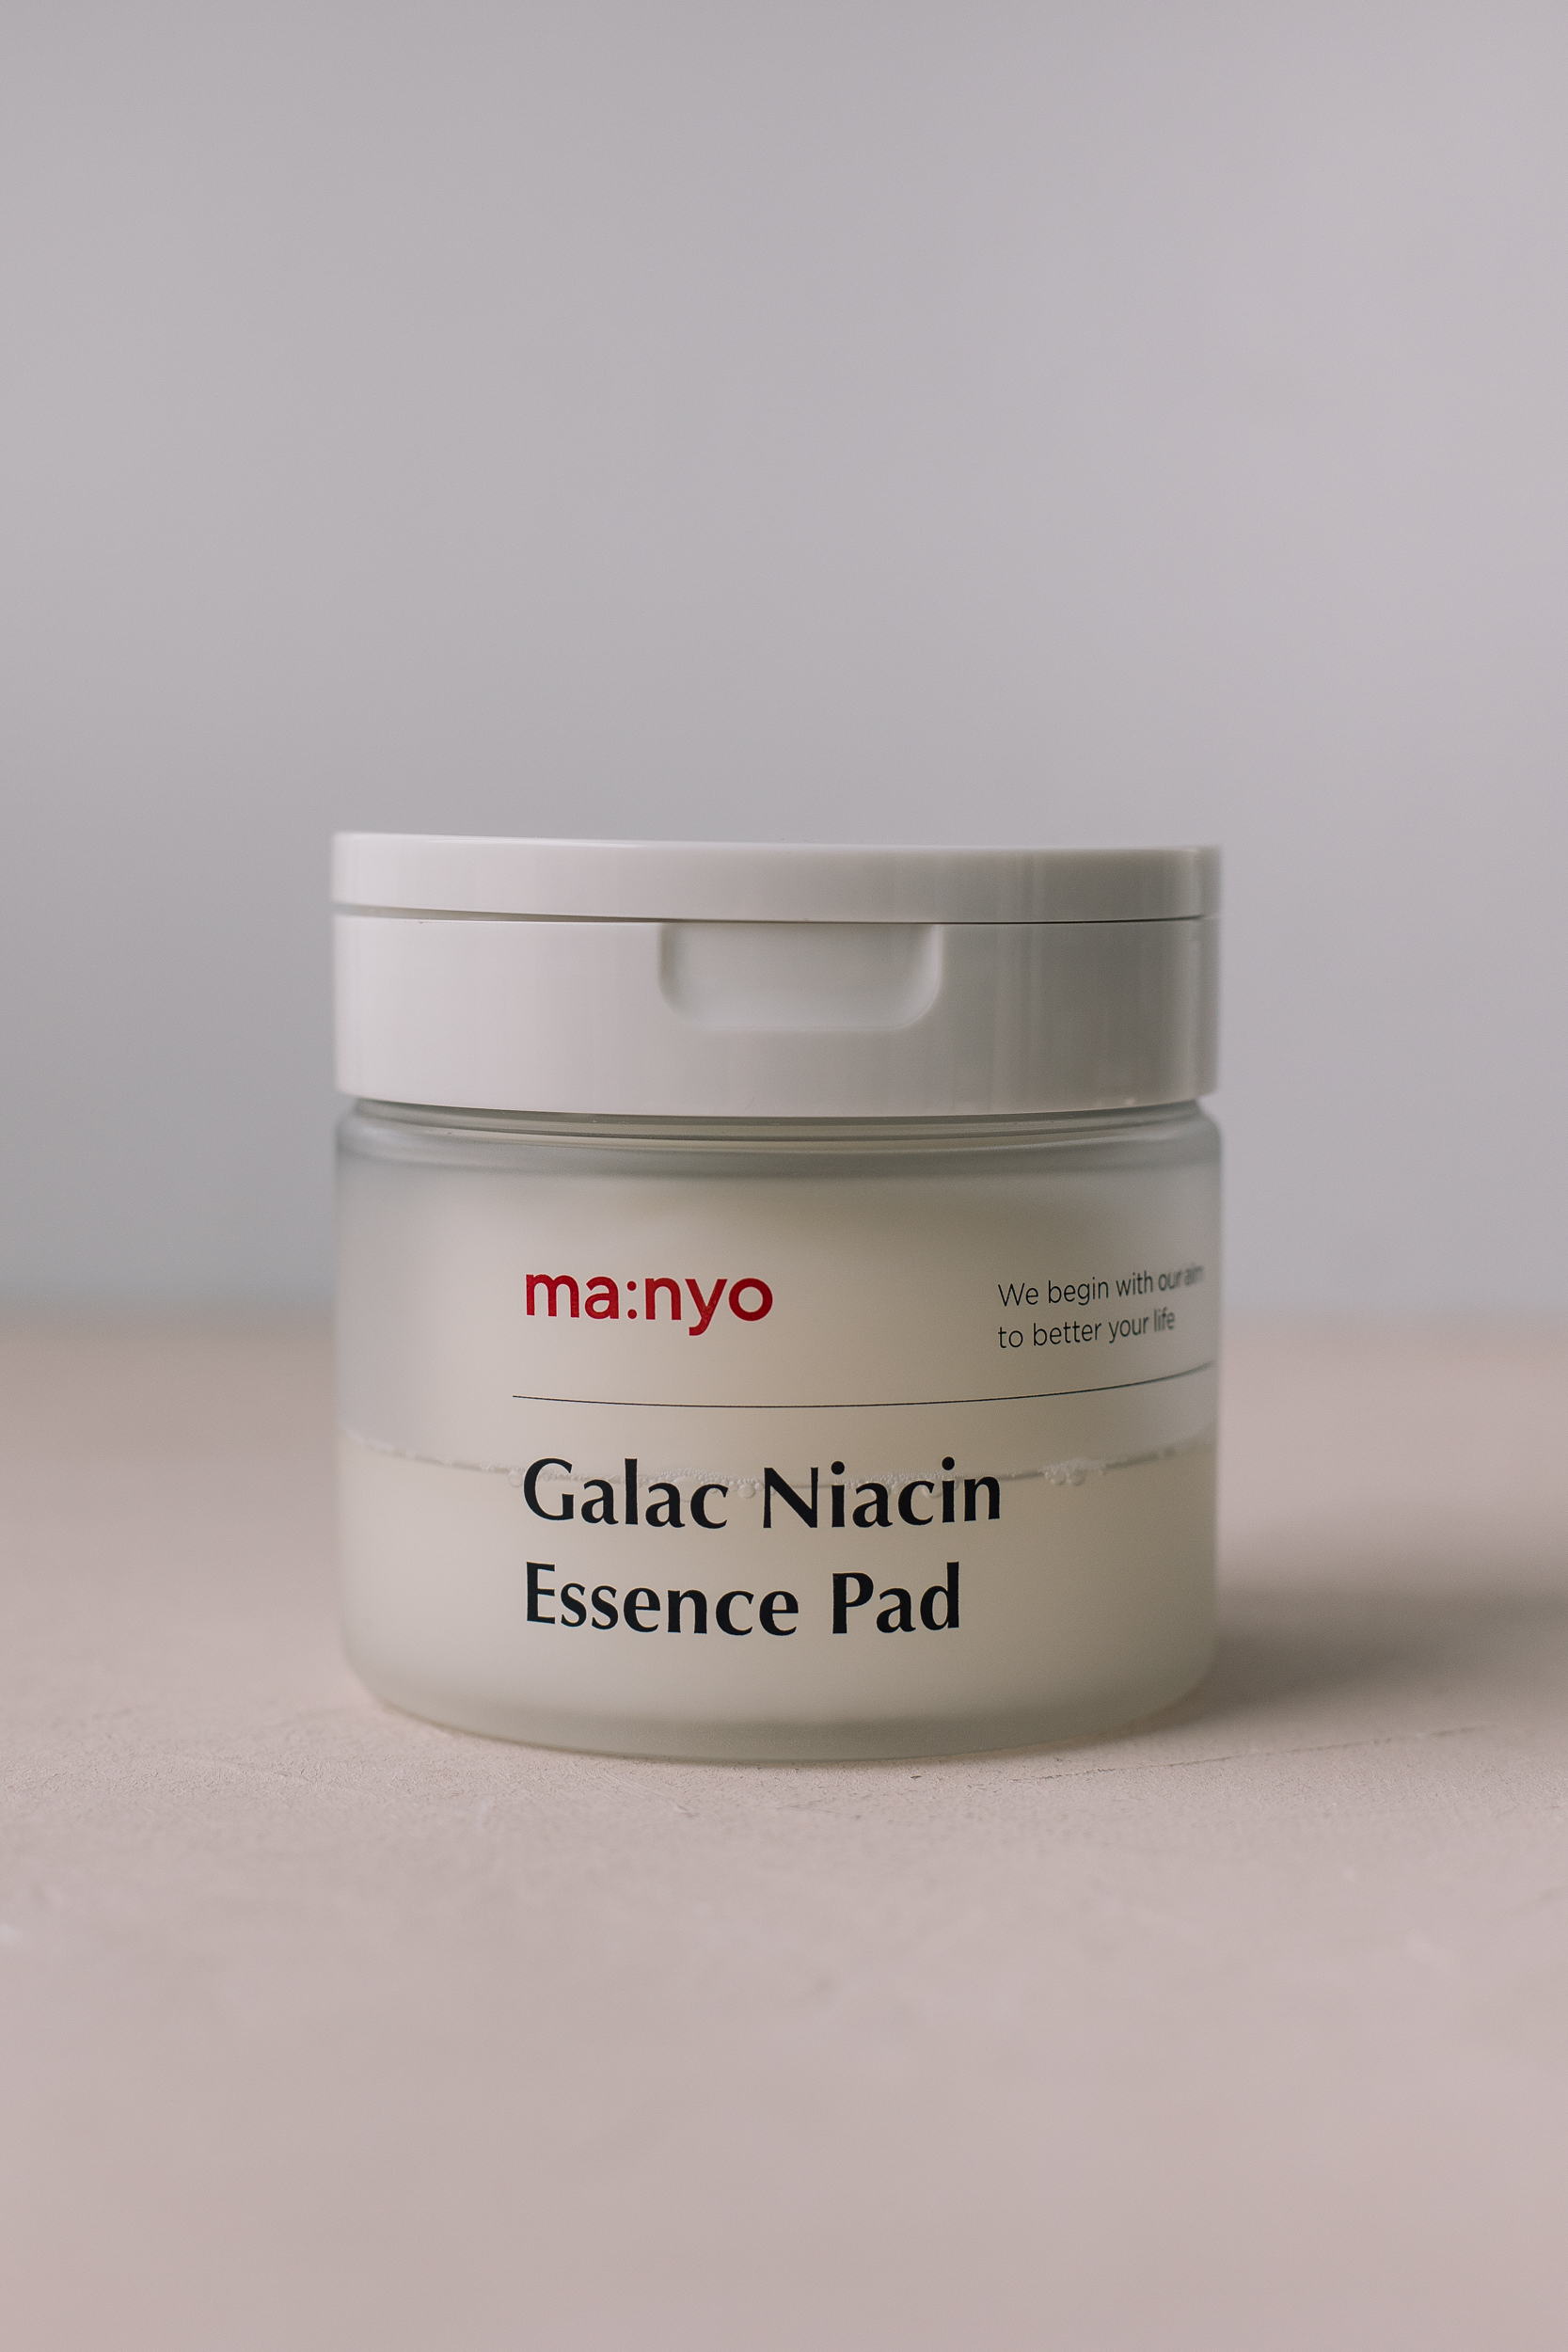 Осветляющие пэды с ниацинамидом Manyo Factory Galac Niacin Essence Pad 80шт/300g - фото 1